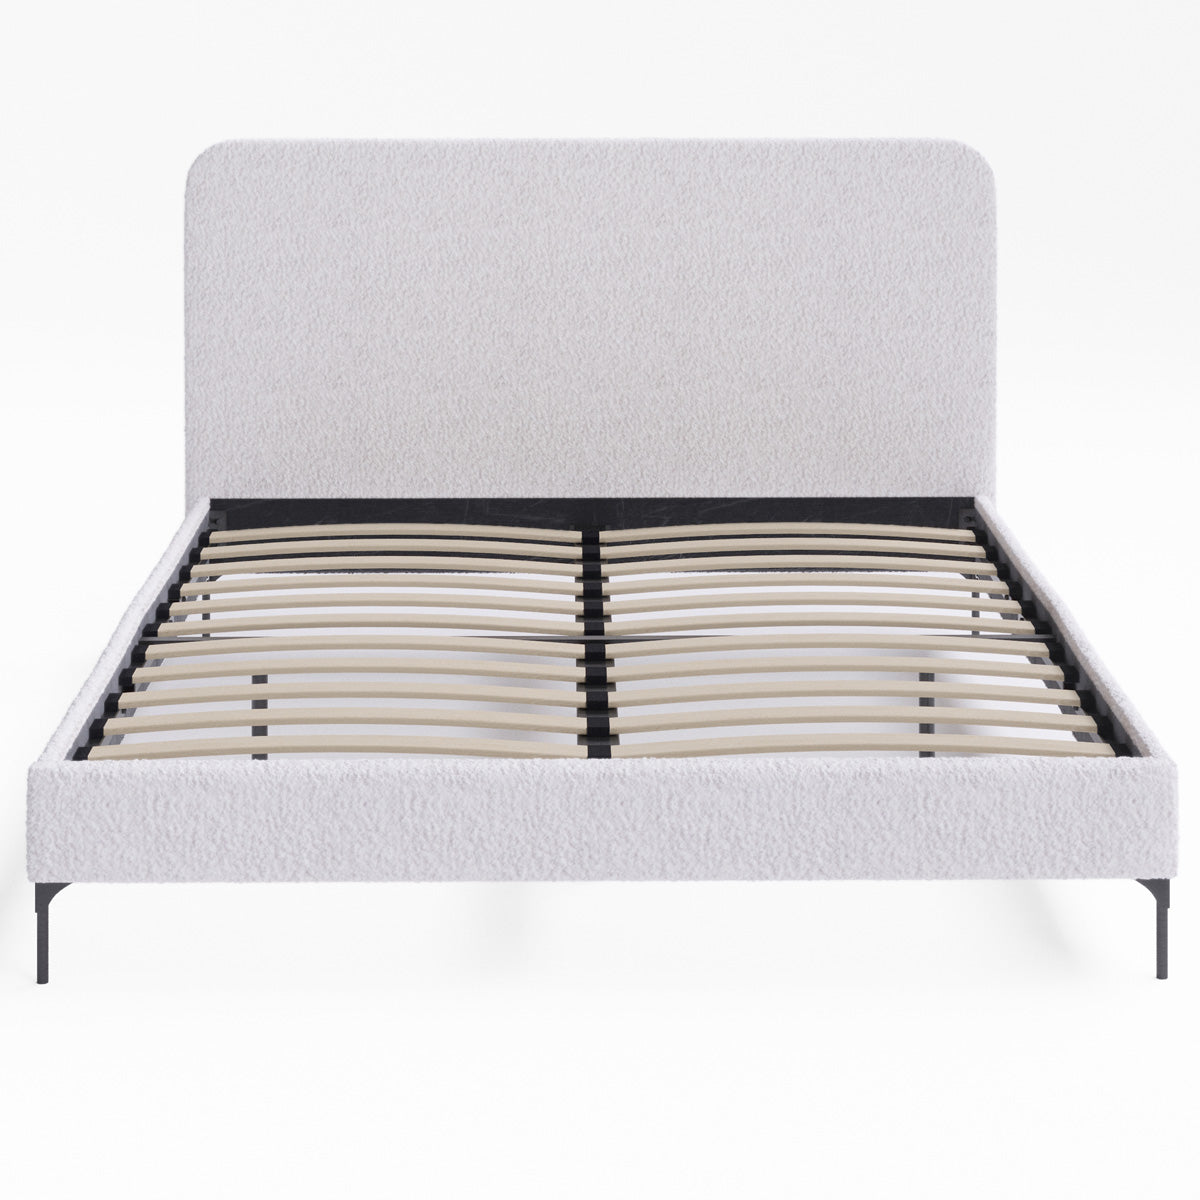 Soho Upholstered Bed Frame (Ivory White Boucle Fabric)